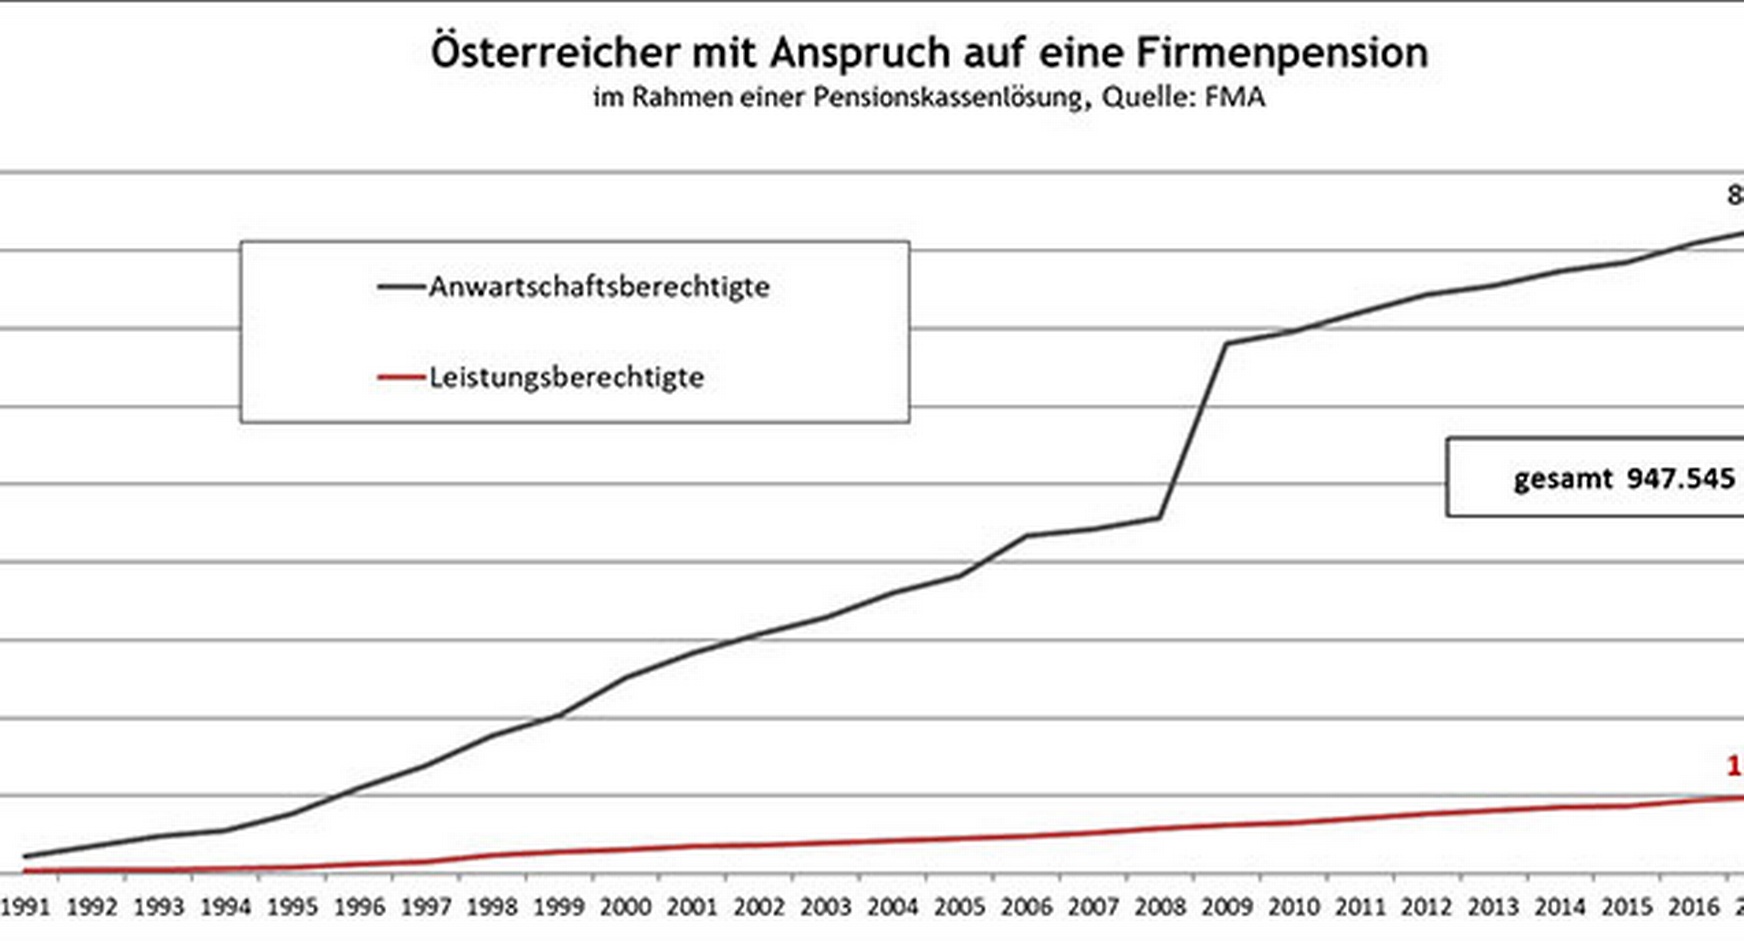 Grafik zu den Österreicherinnen und Österreichern mit Anspruch auf eine Firmenpension